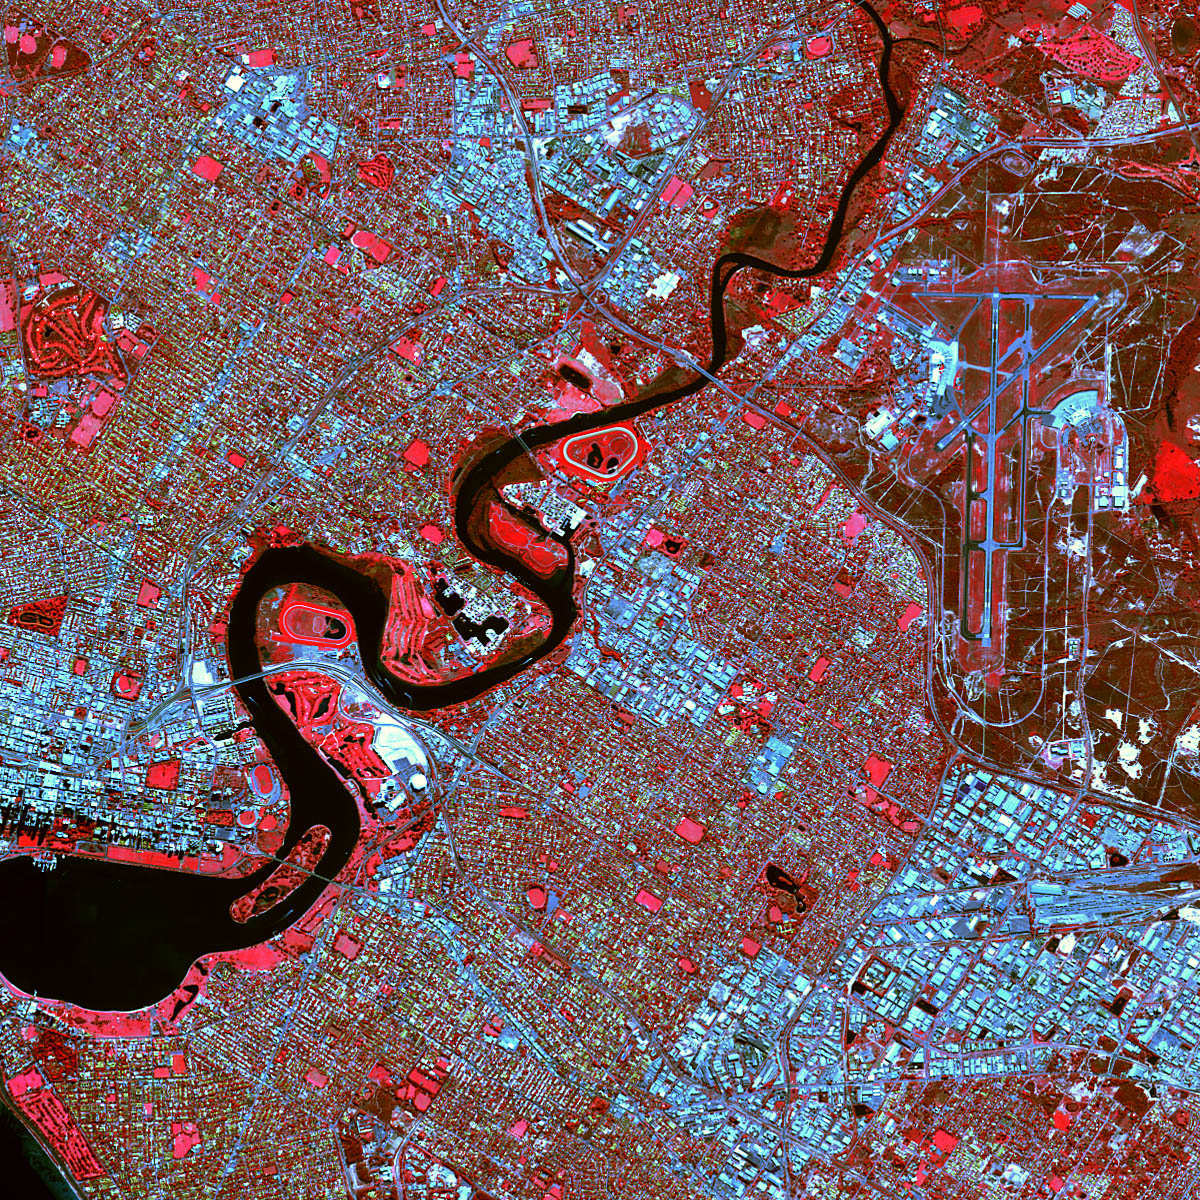 Image de la ville de Perth acquise en 2002 par le satellite Spot 5.